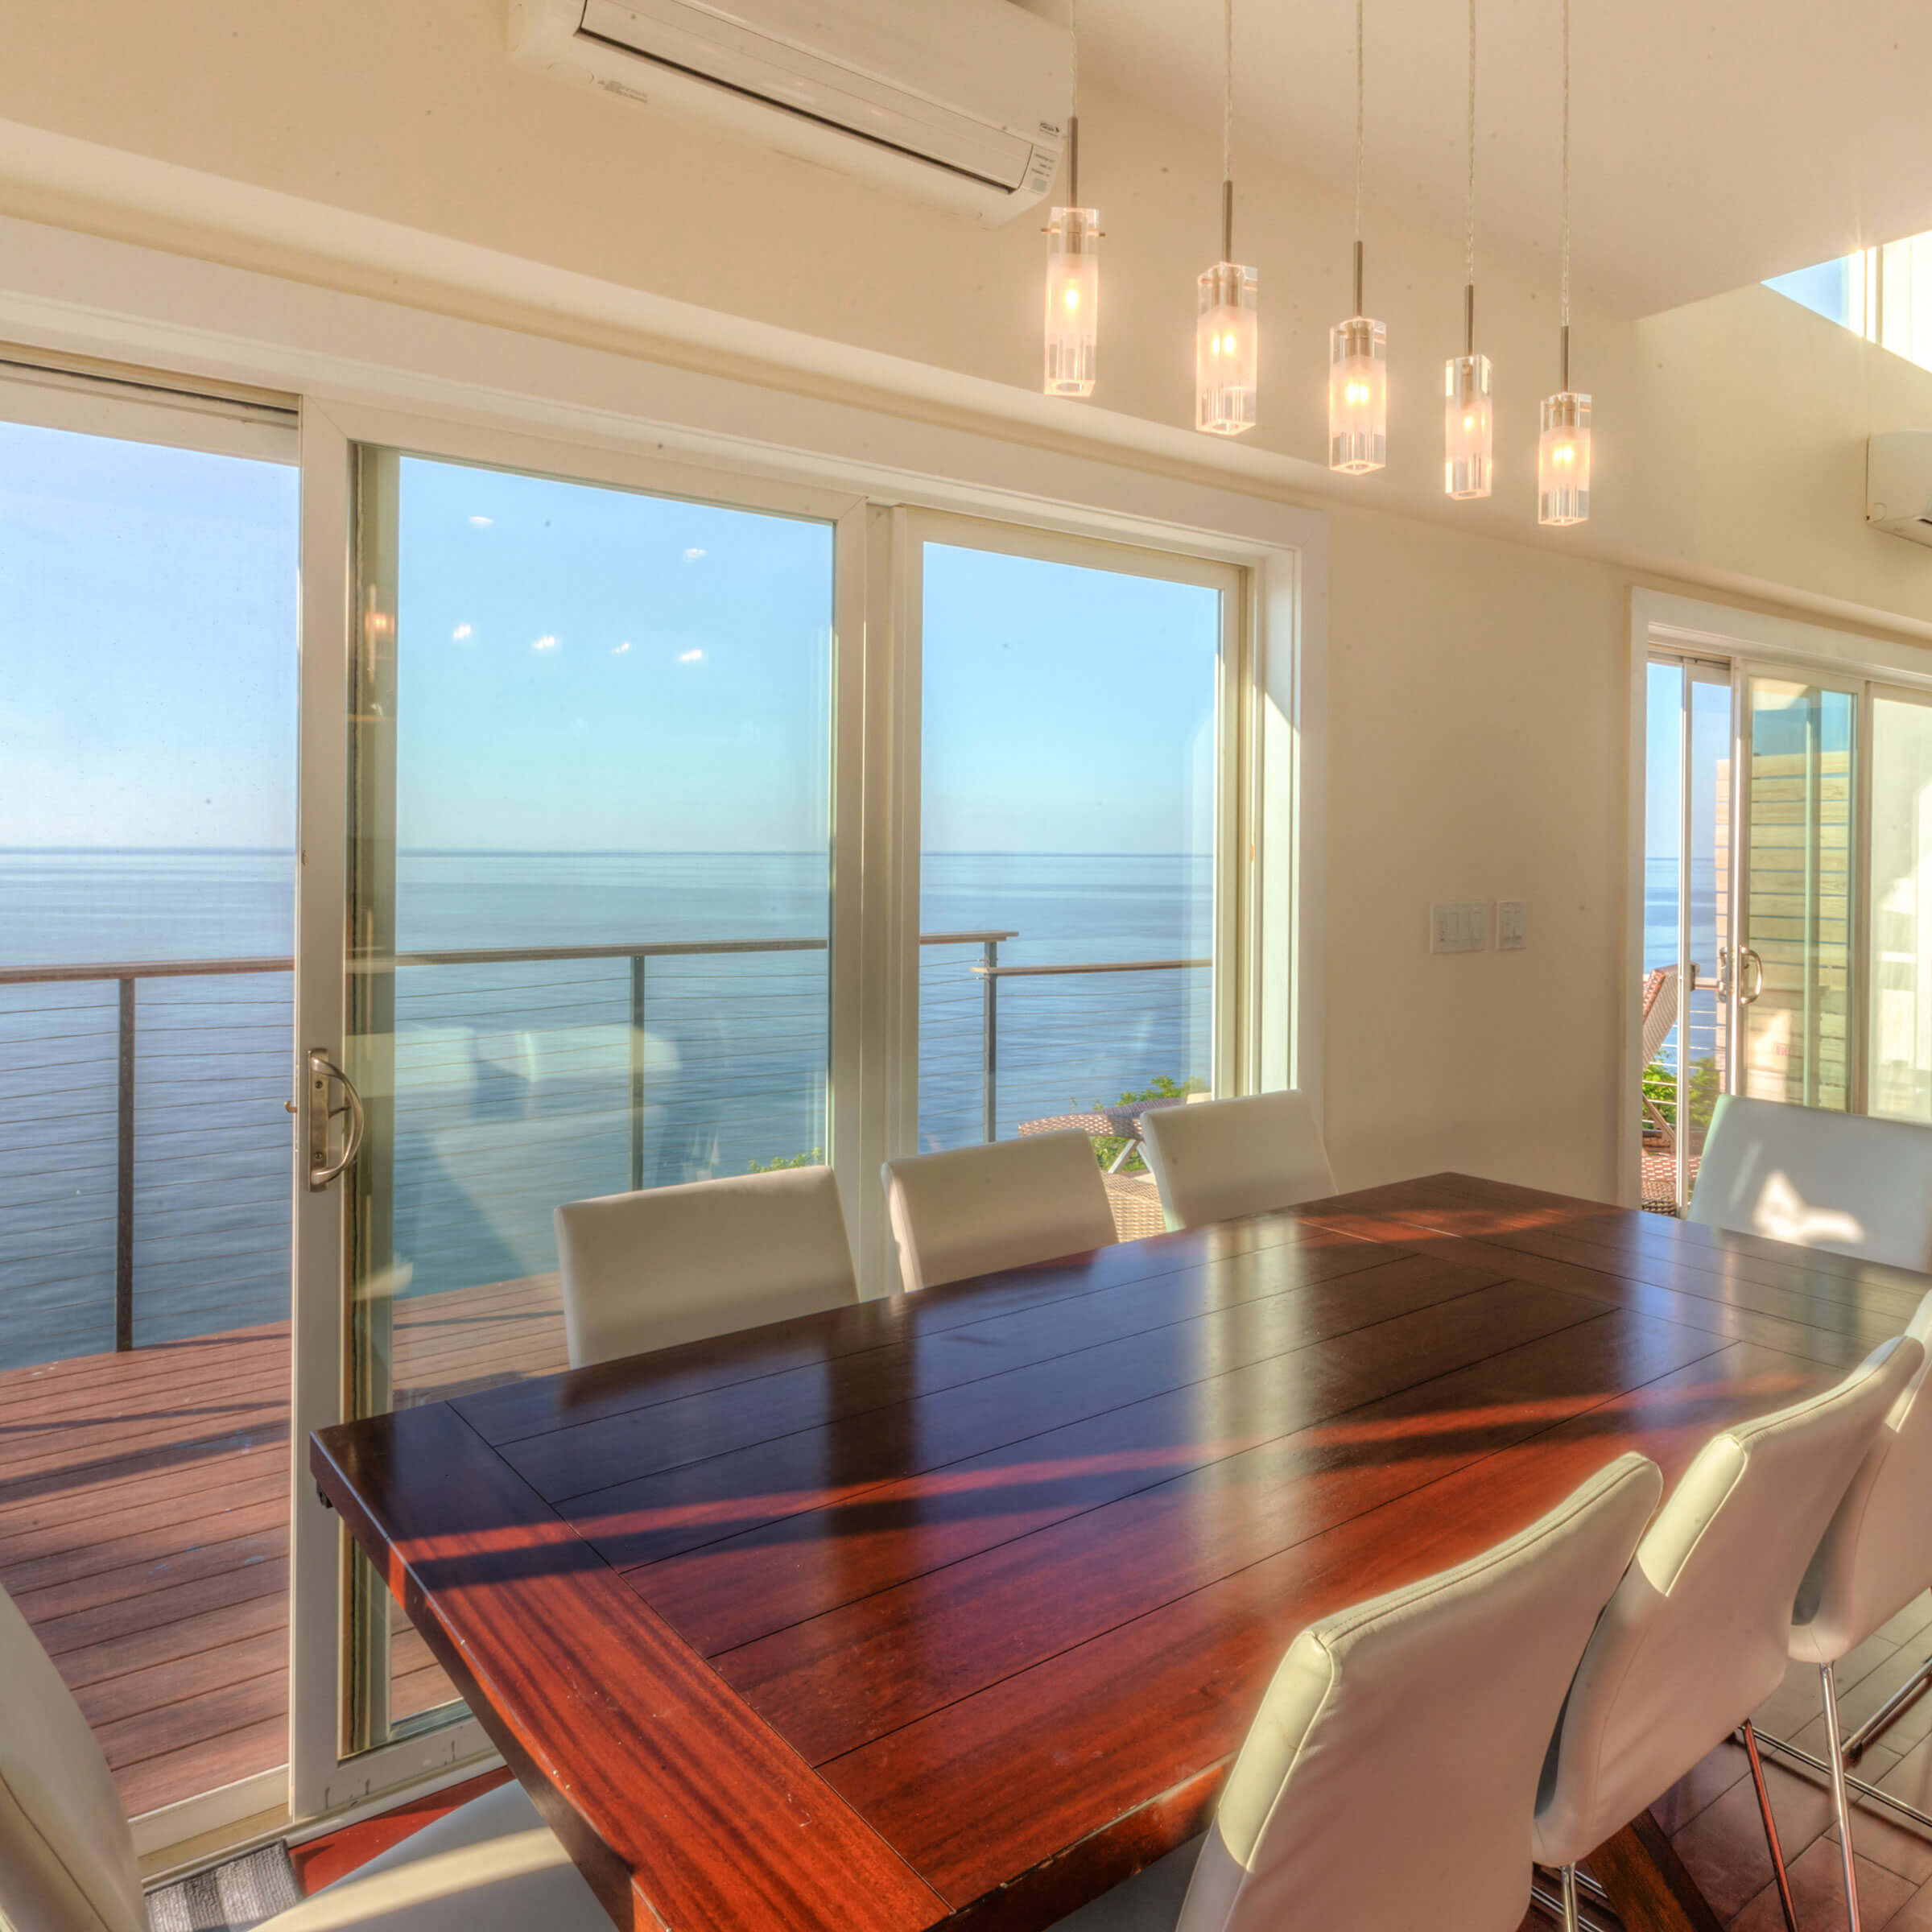 Ocean View Home With Essential Sliding Patio Door